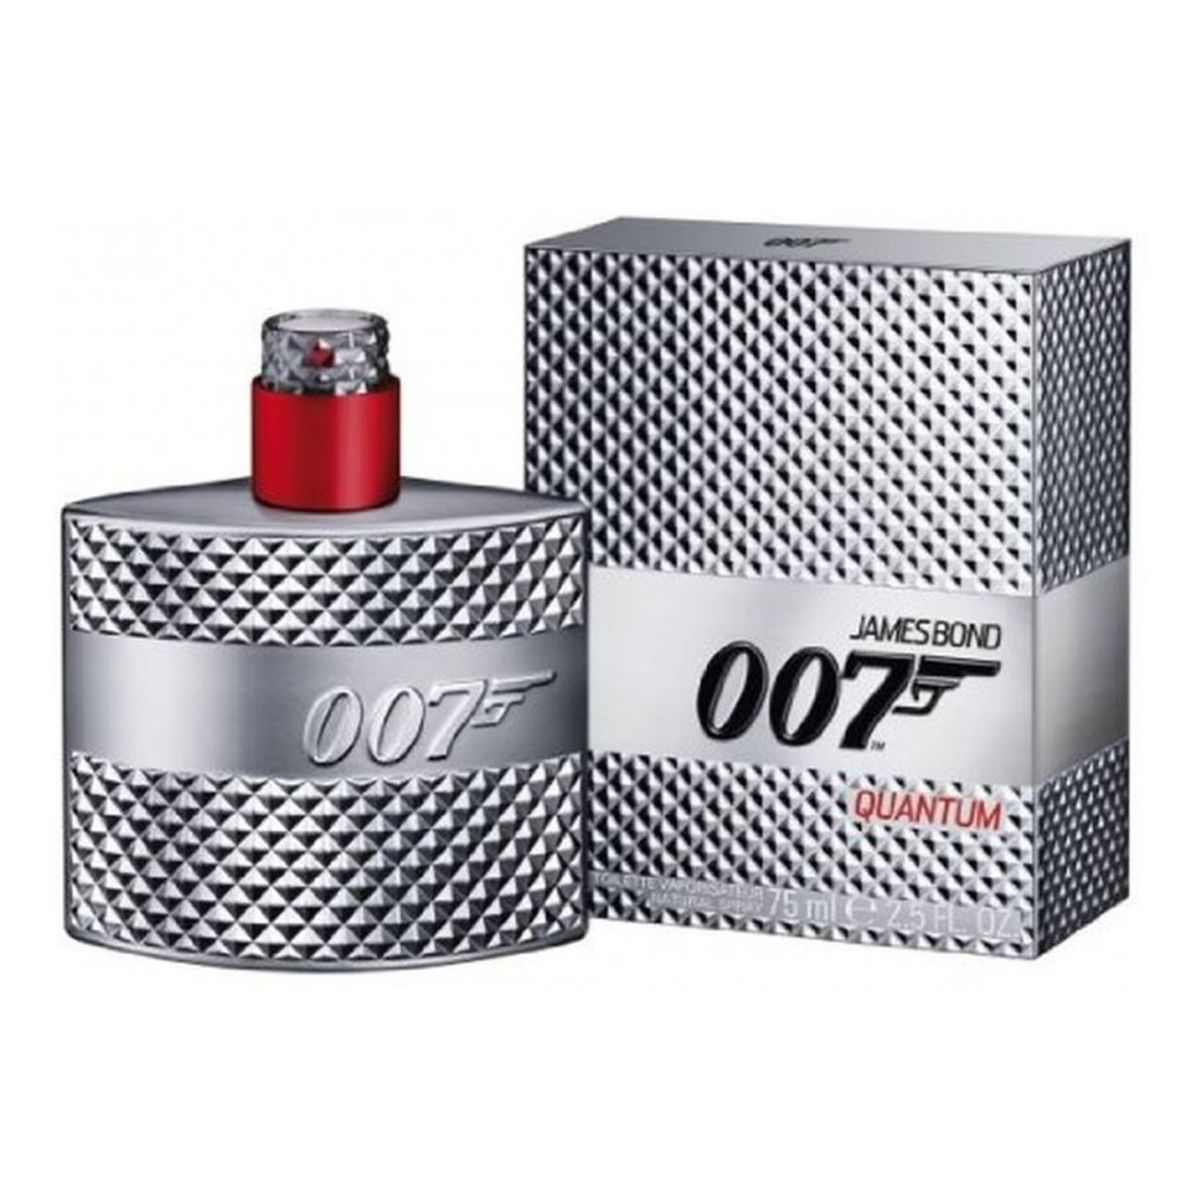 James Bond 007 Quantum woda toaletowa dla mężczyzn 75ml